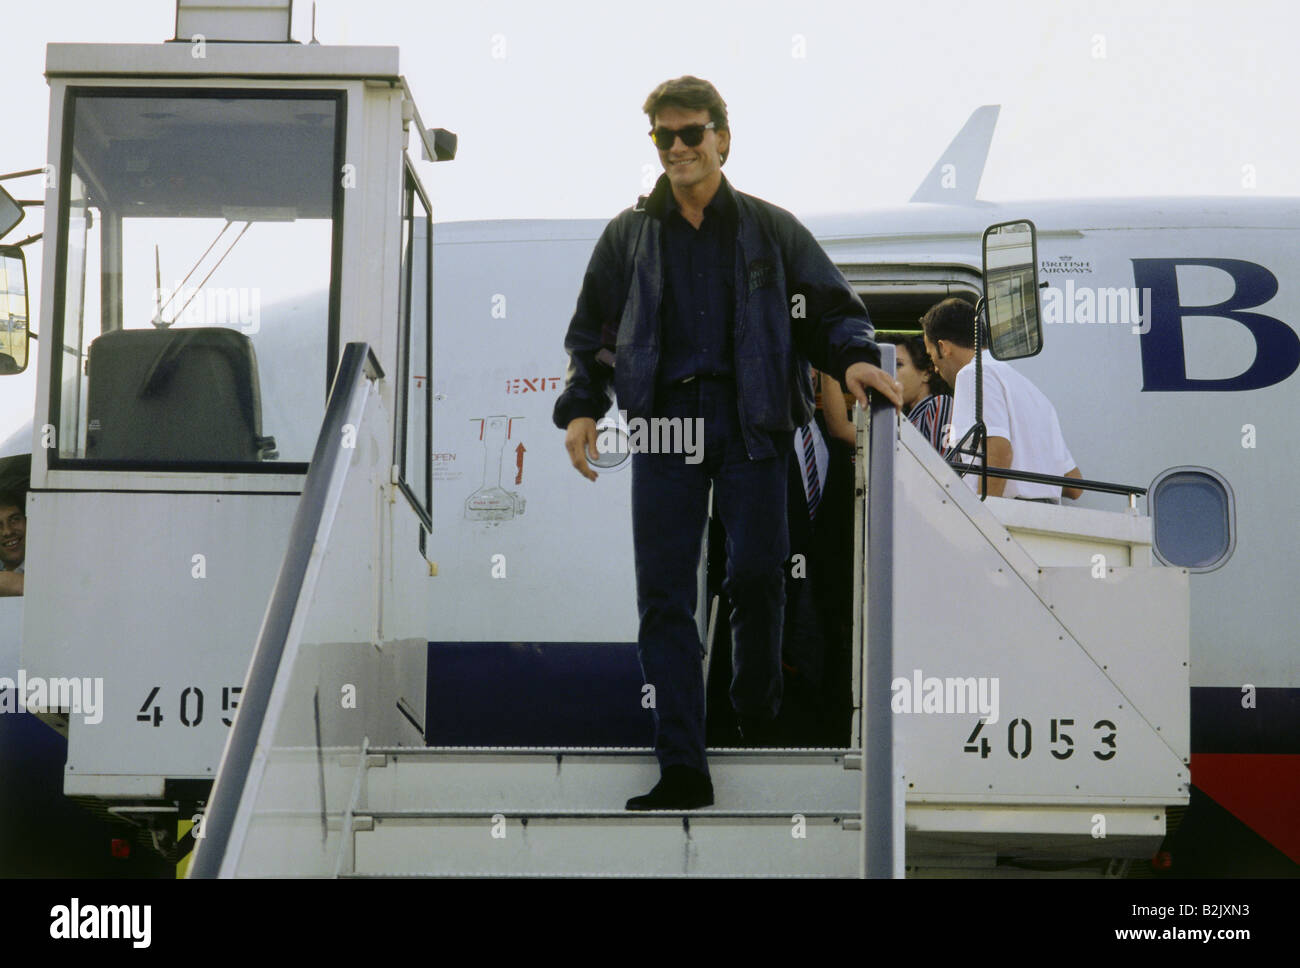 Swayze, Patrick, 18.8.1952 - 14.9.2009, acteur américain, arrivée à l'aéroport de Cologne Bonn, 25.9.1992, Banque D'Images